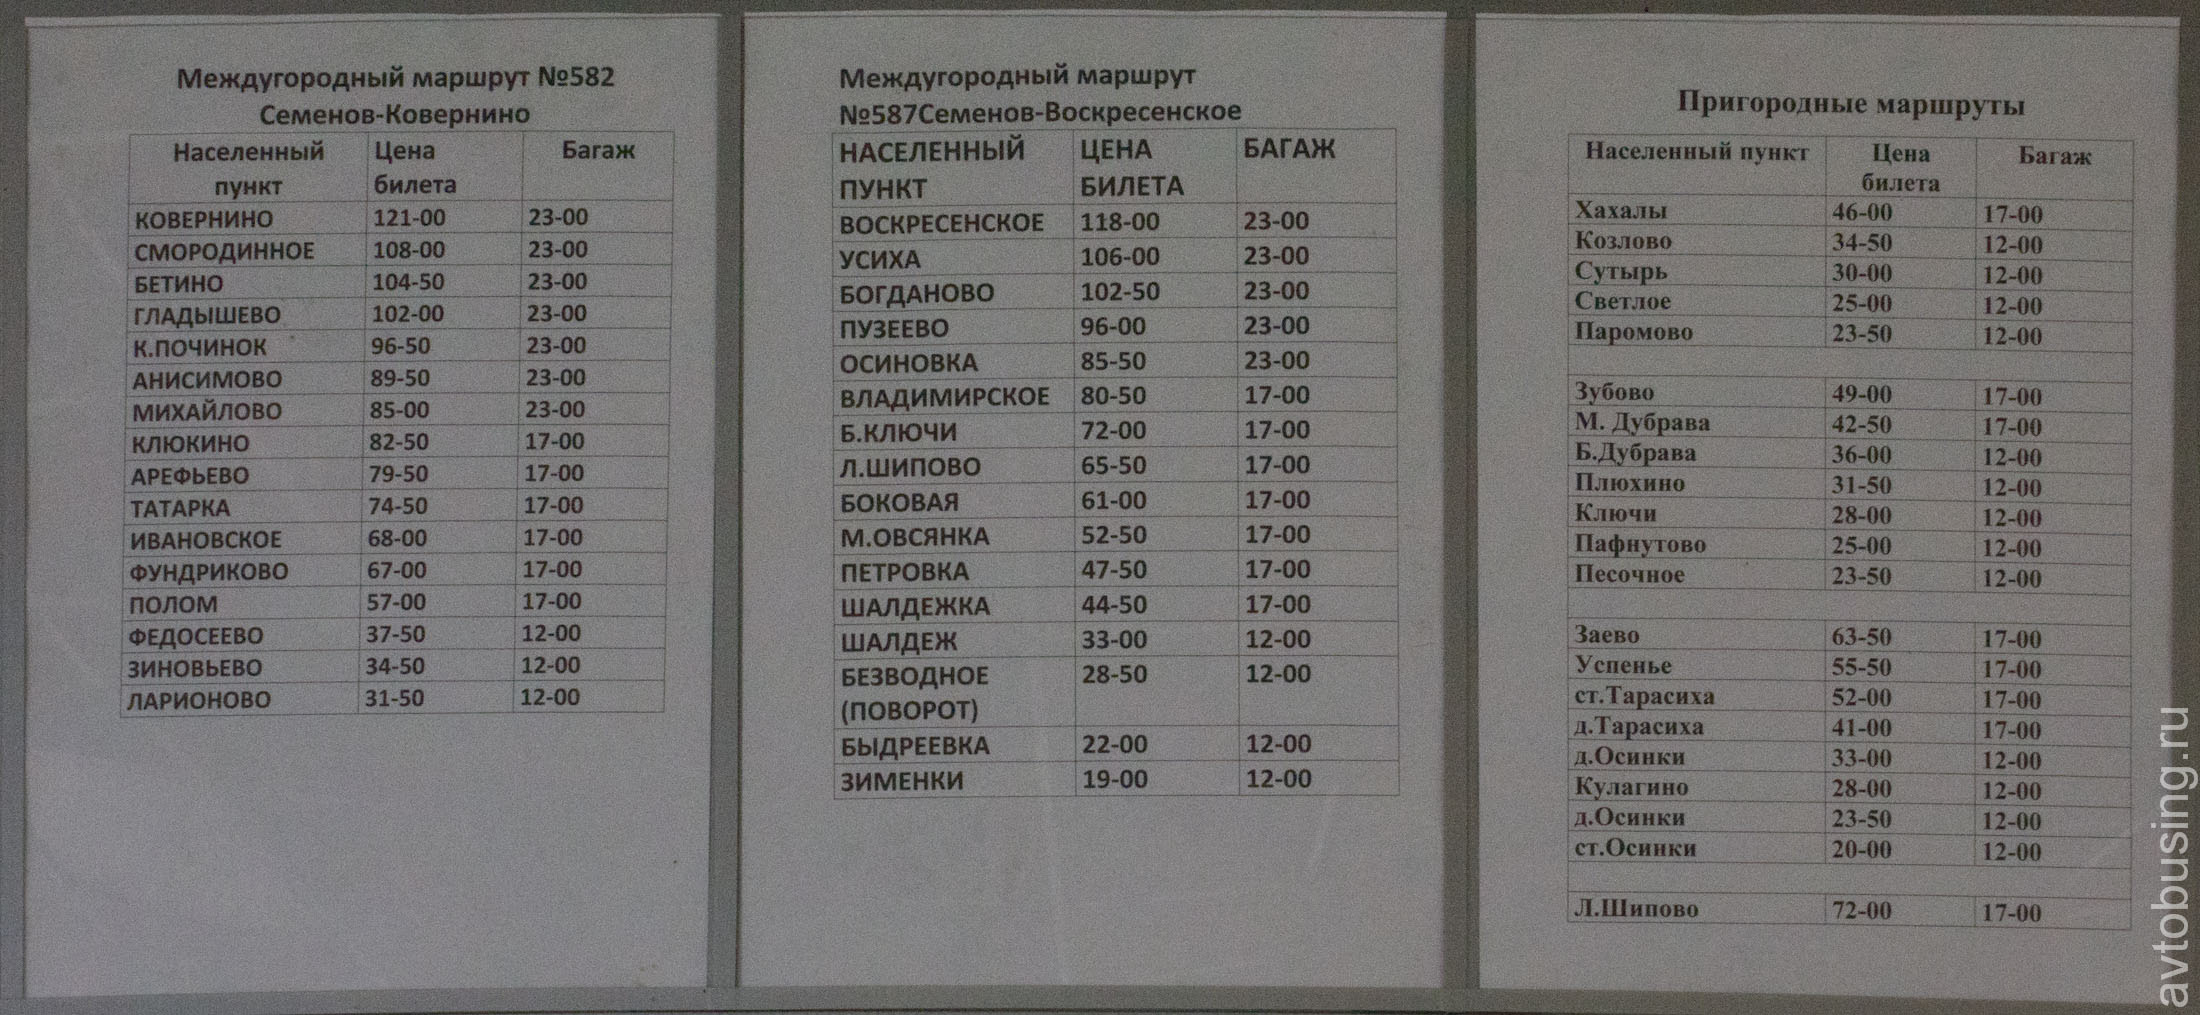 Семёновская автостанция расписание автобусов